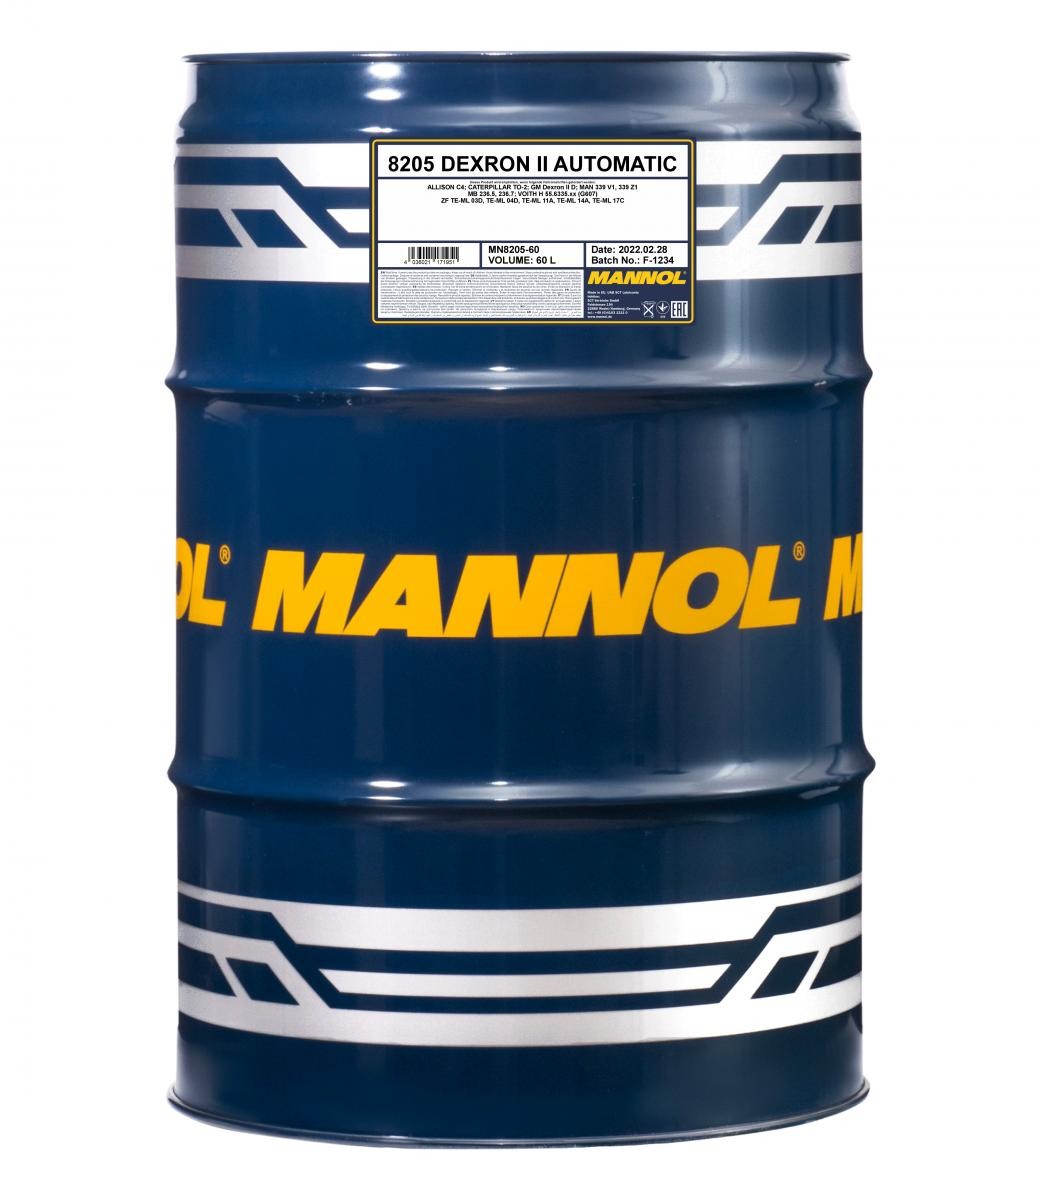 Aceite para transmisión automática MERCEDES-BENZ camion MANNOLMN8205-60 baratos online